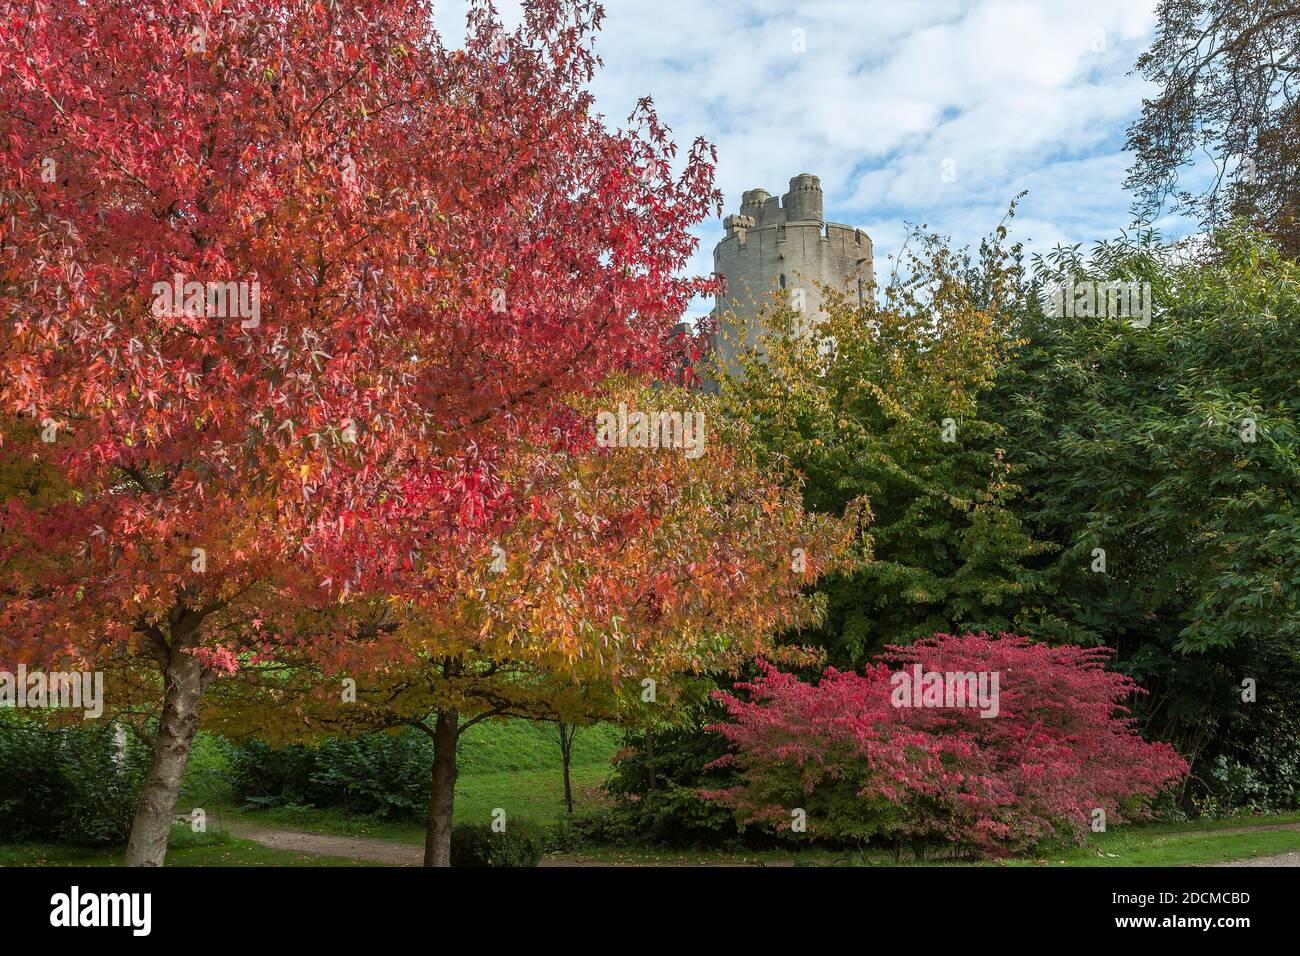 Un aperçu de l'une des tours du château d'Arundel, depuis les jardins du château, Arundel, West Sussex, Angleterre, Royaume-Uni: Sucrine américaine (Liquidambar styraciflua) Banque D'Images